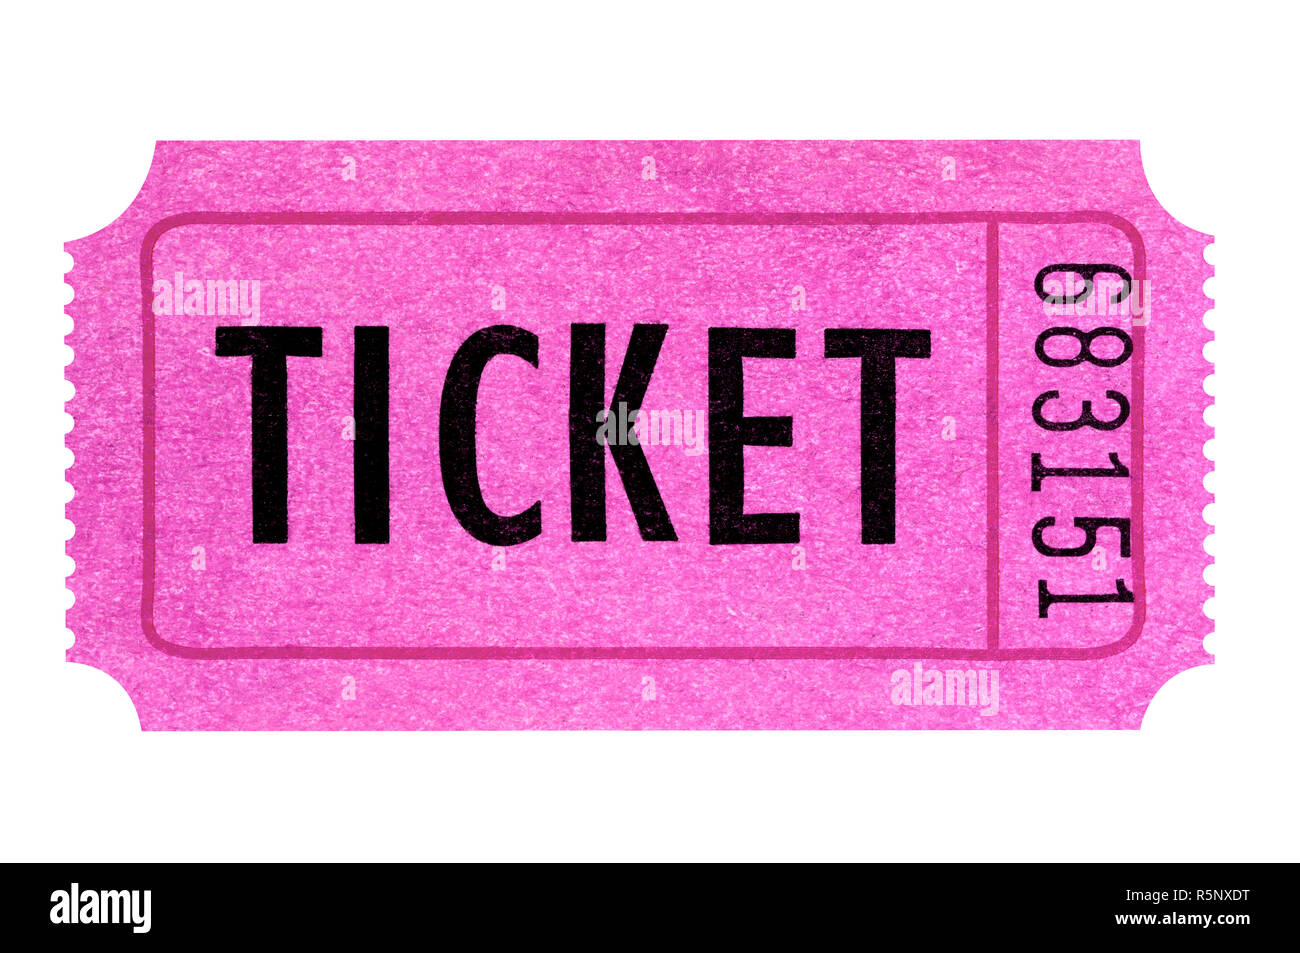 Pink concert ticket Banque d'images détourées - Alamy